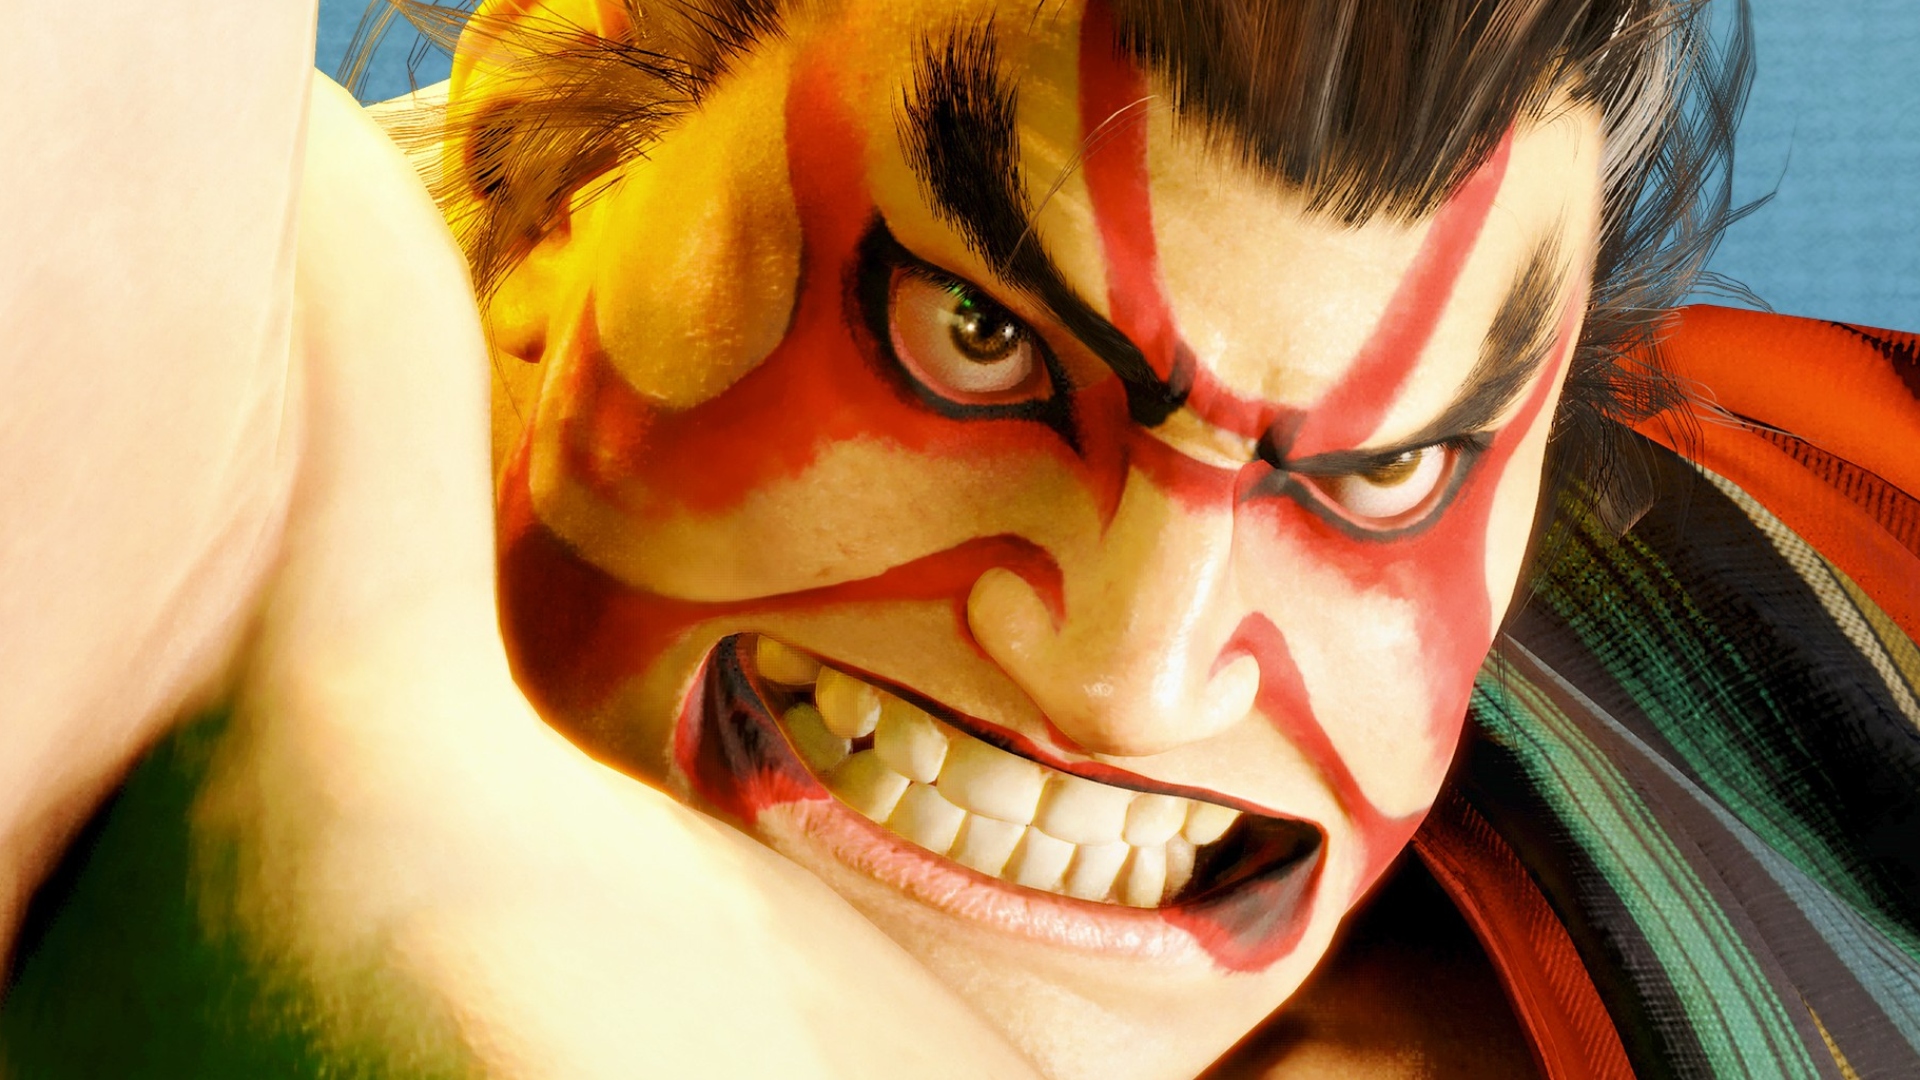 Street Fighter 6 se torna game de luta mais jogado do Steam